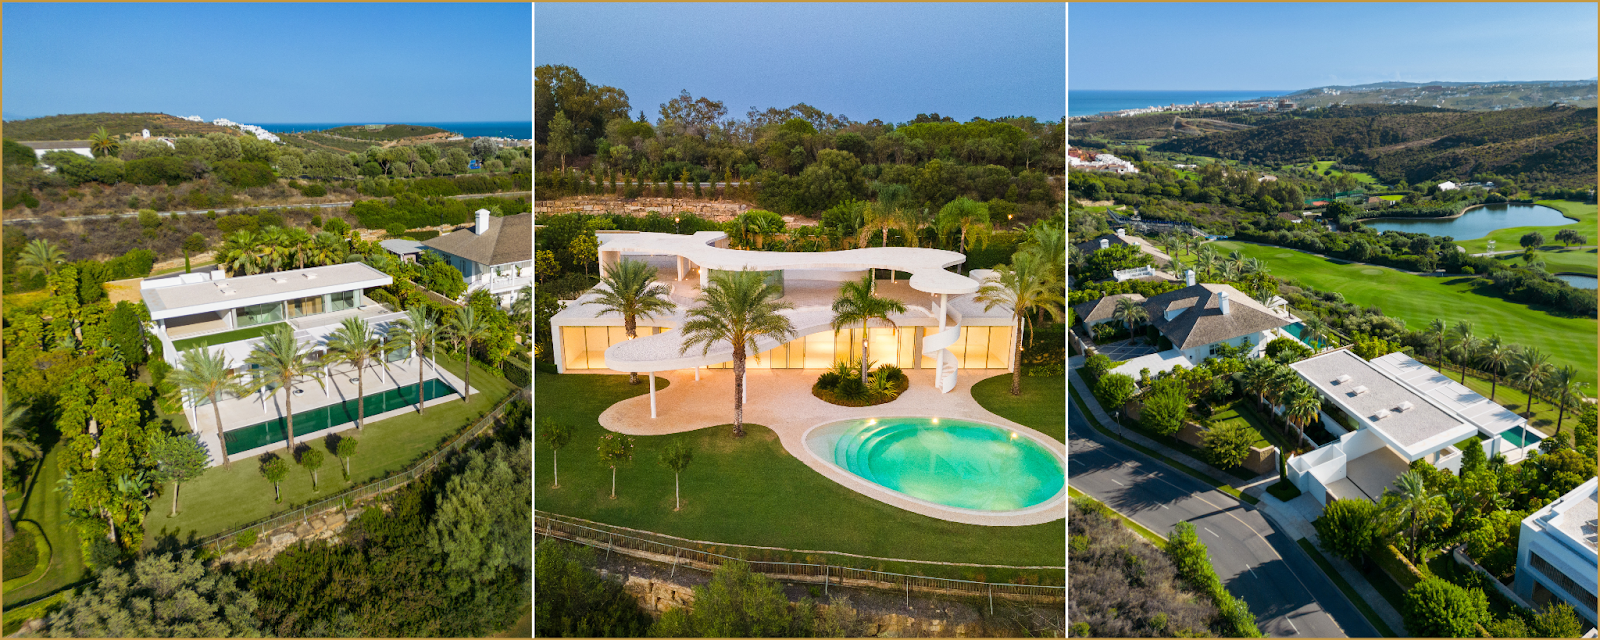 Finca Cortesin Luxe Villas for sale Hansson Hertzell real estate in Casares Costa del Sol